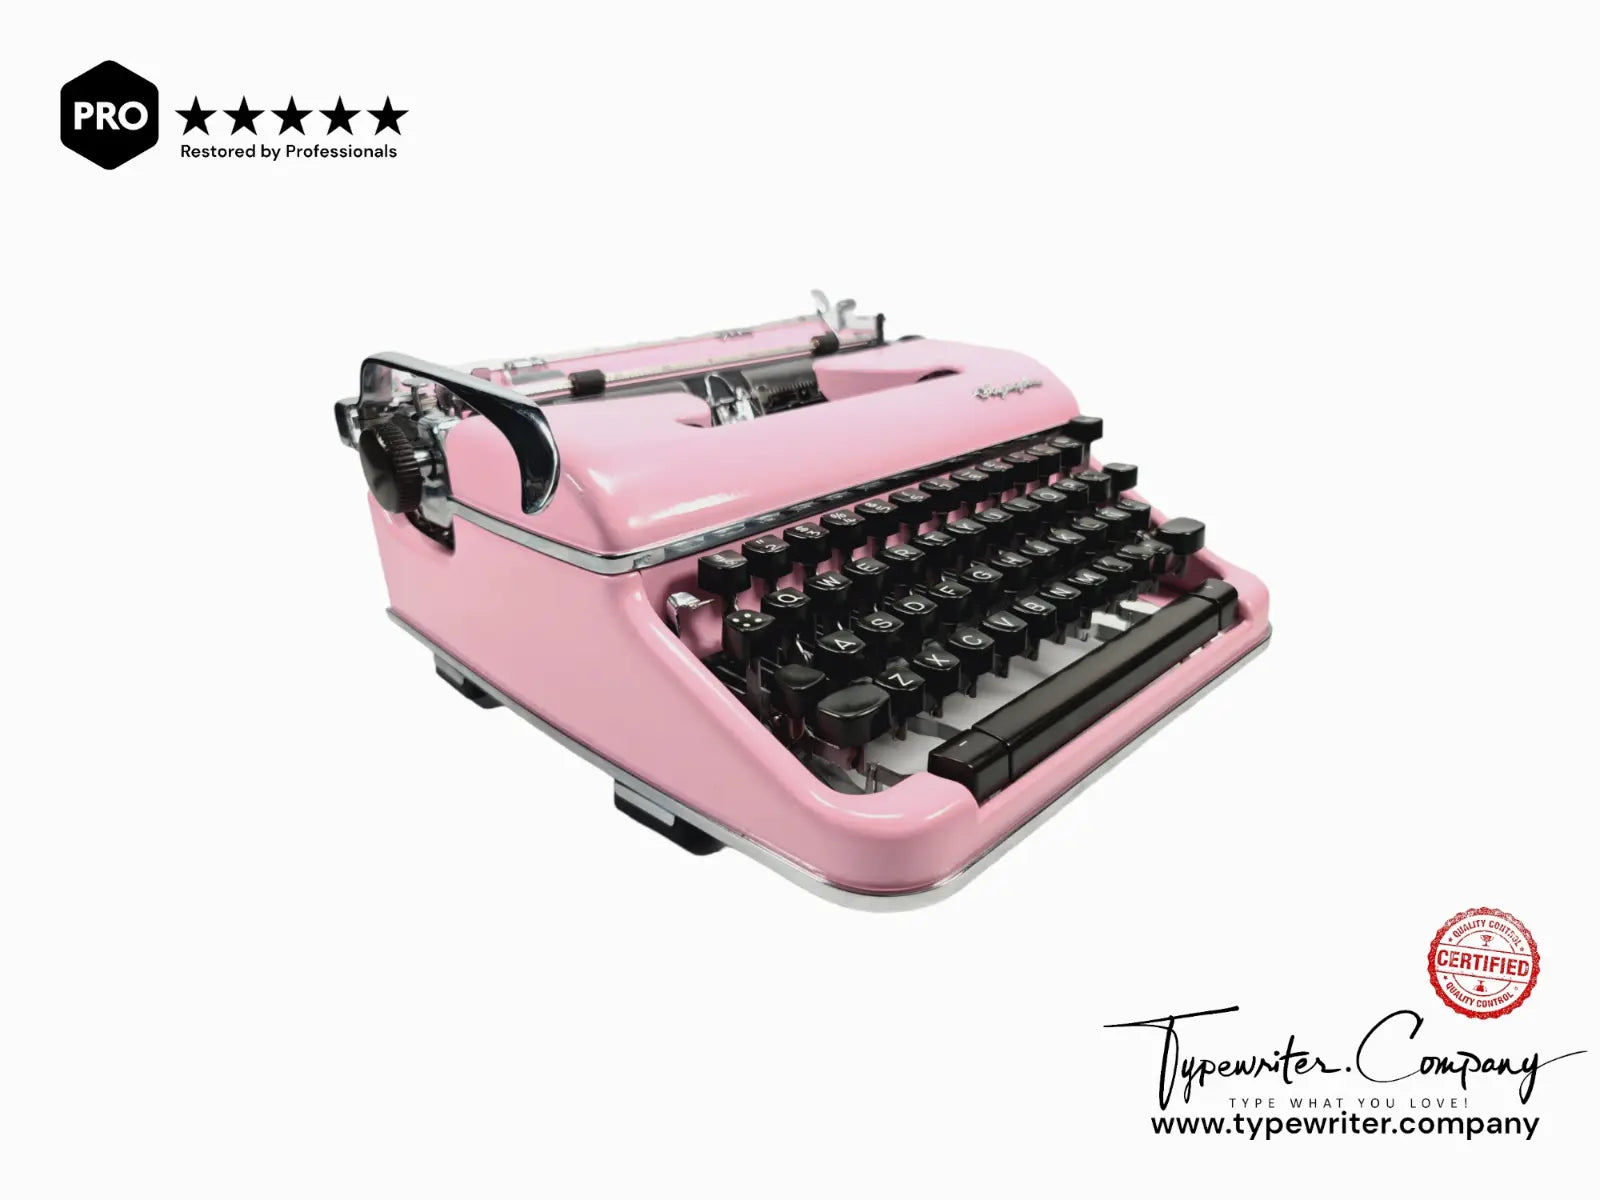 PINK Olimpia SM4 - Vintage German Typewriter - Working Typewriter - ElGranero Typewriter.Company